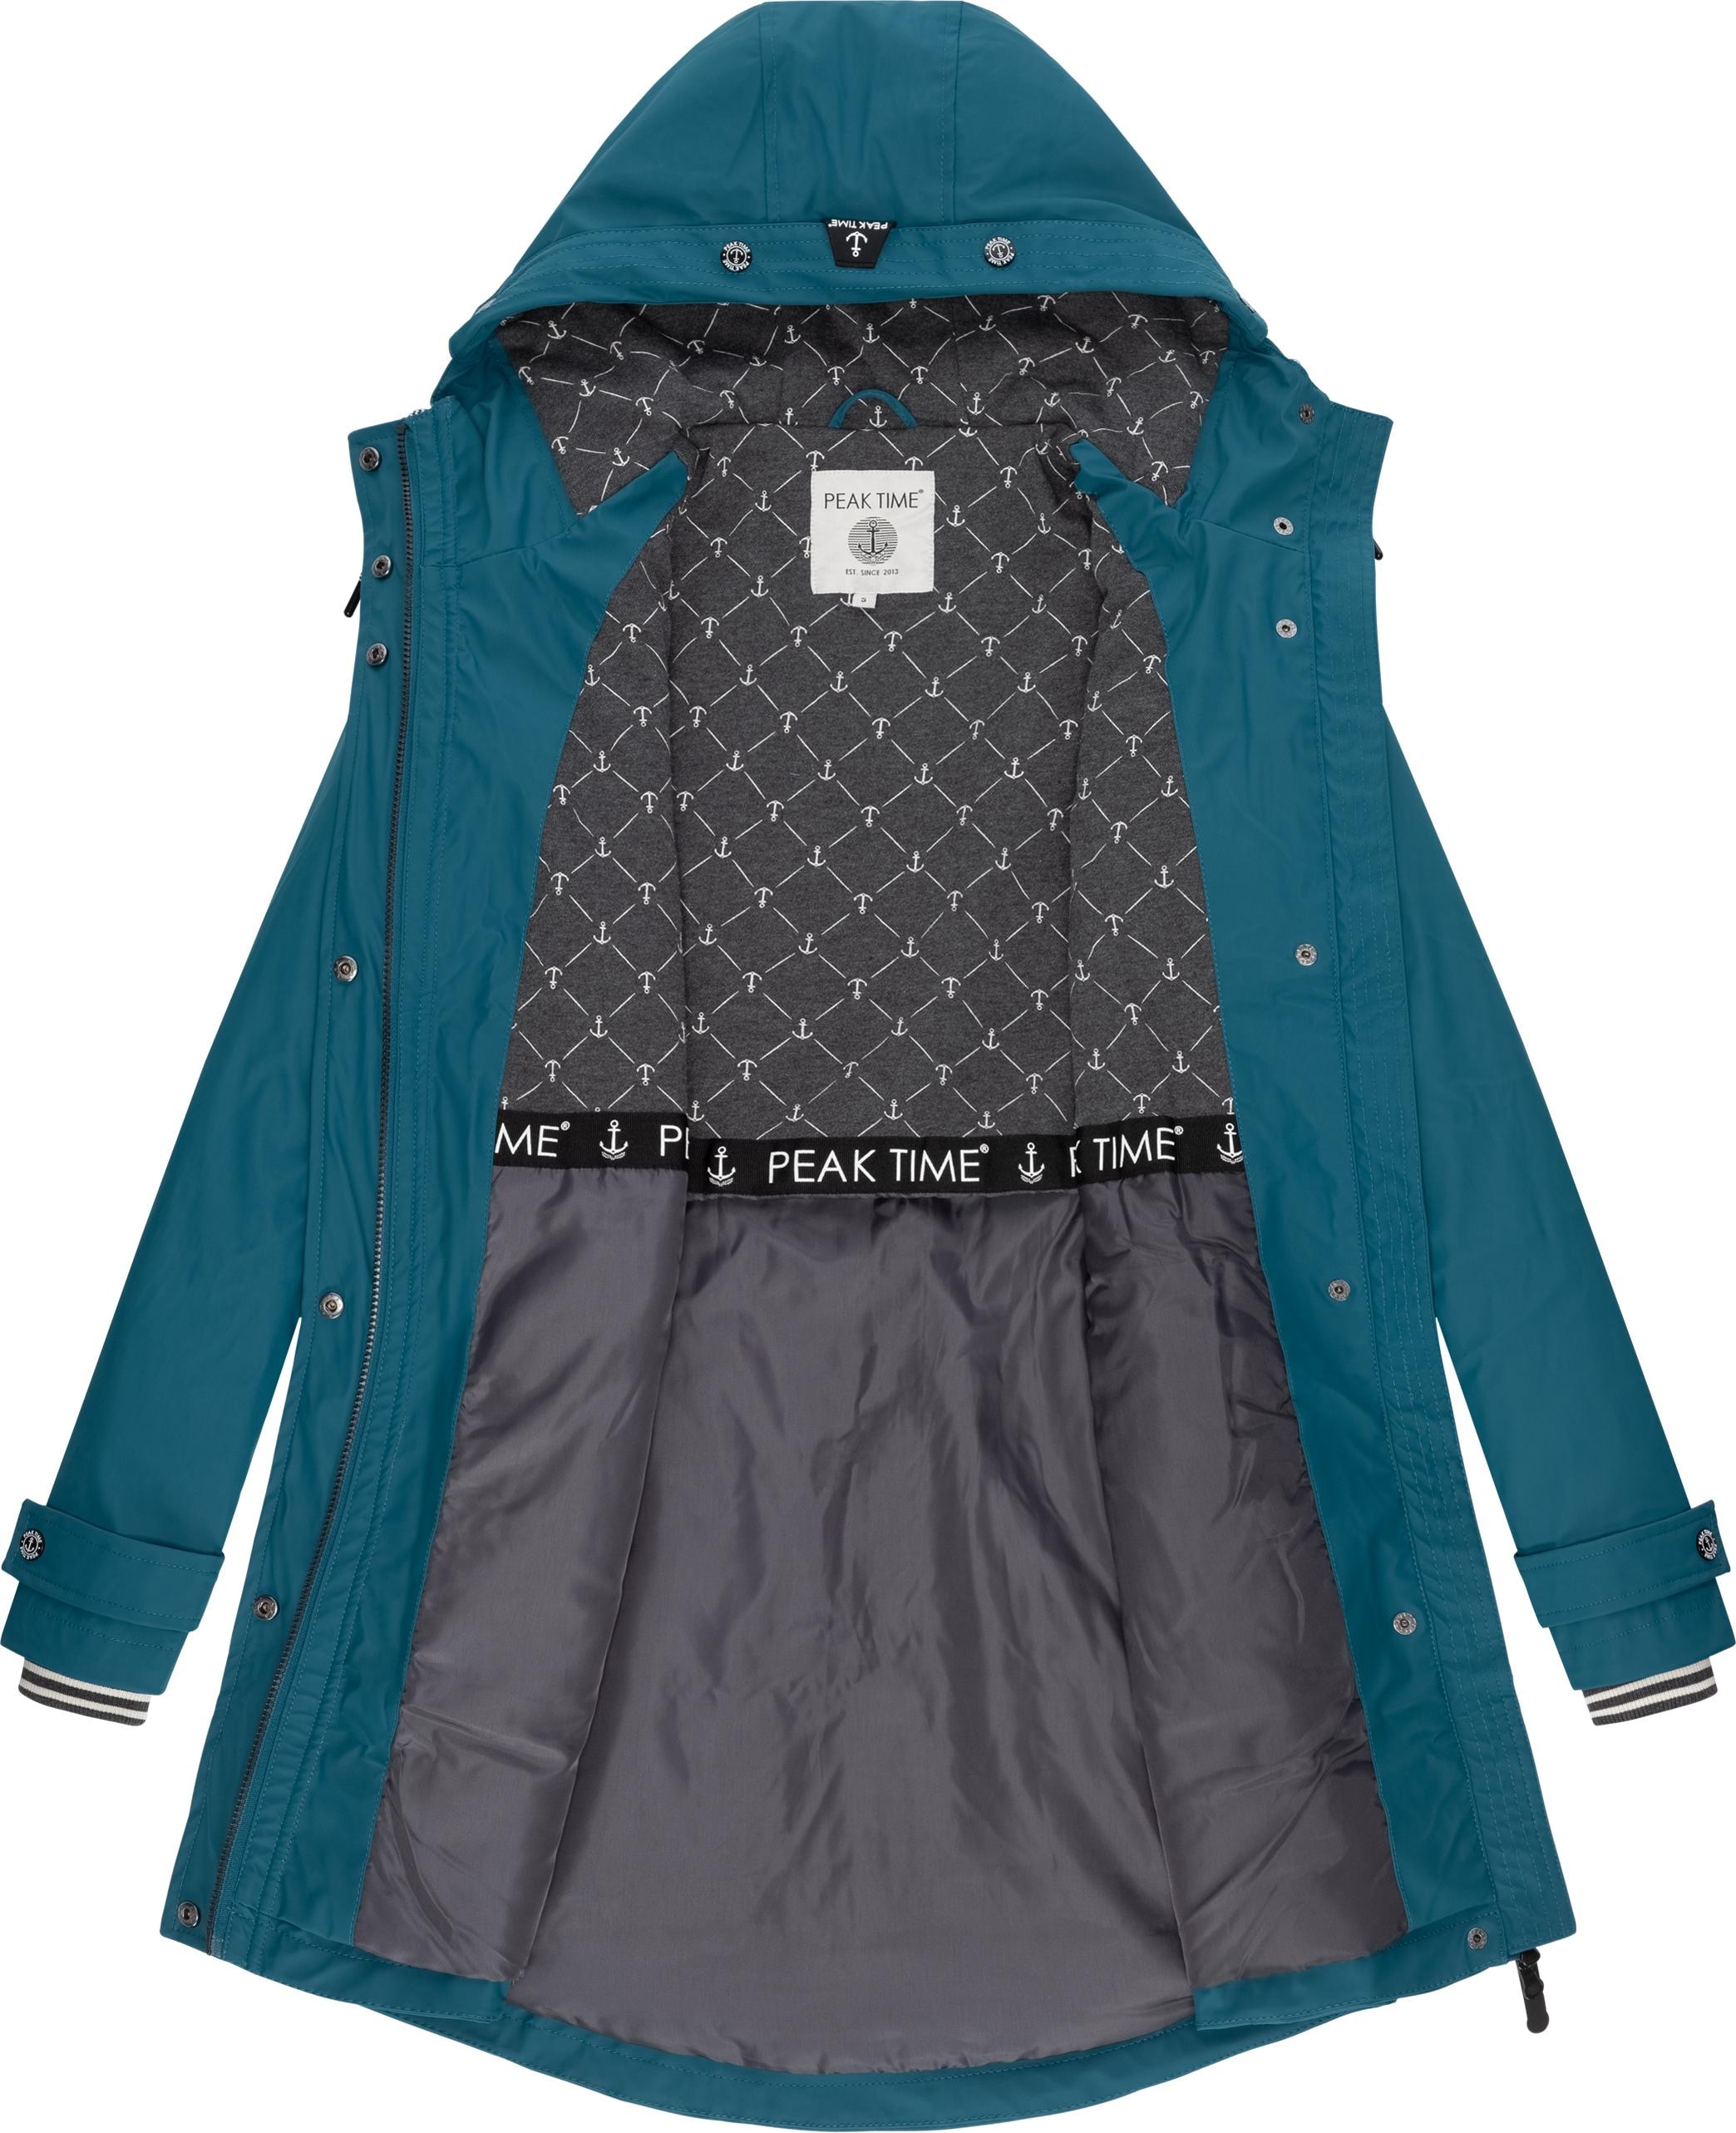 PEAK TIME Regenjacke Kapuze, »L60042«, mit Damen taillierter shoppen für Regenmantel stylisch